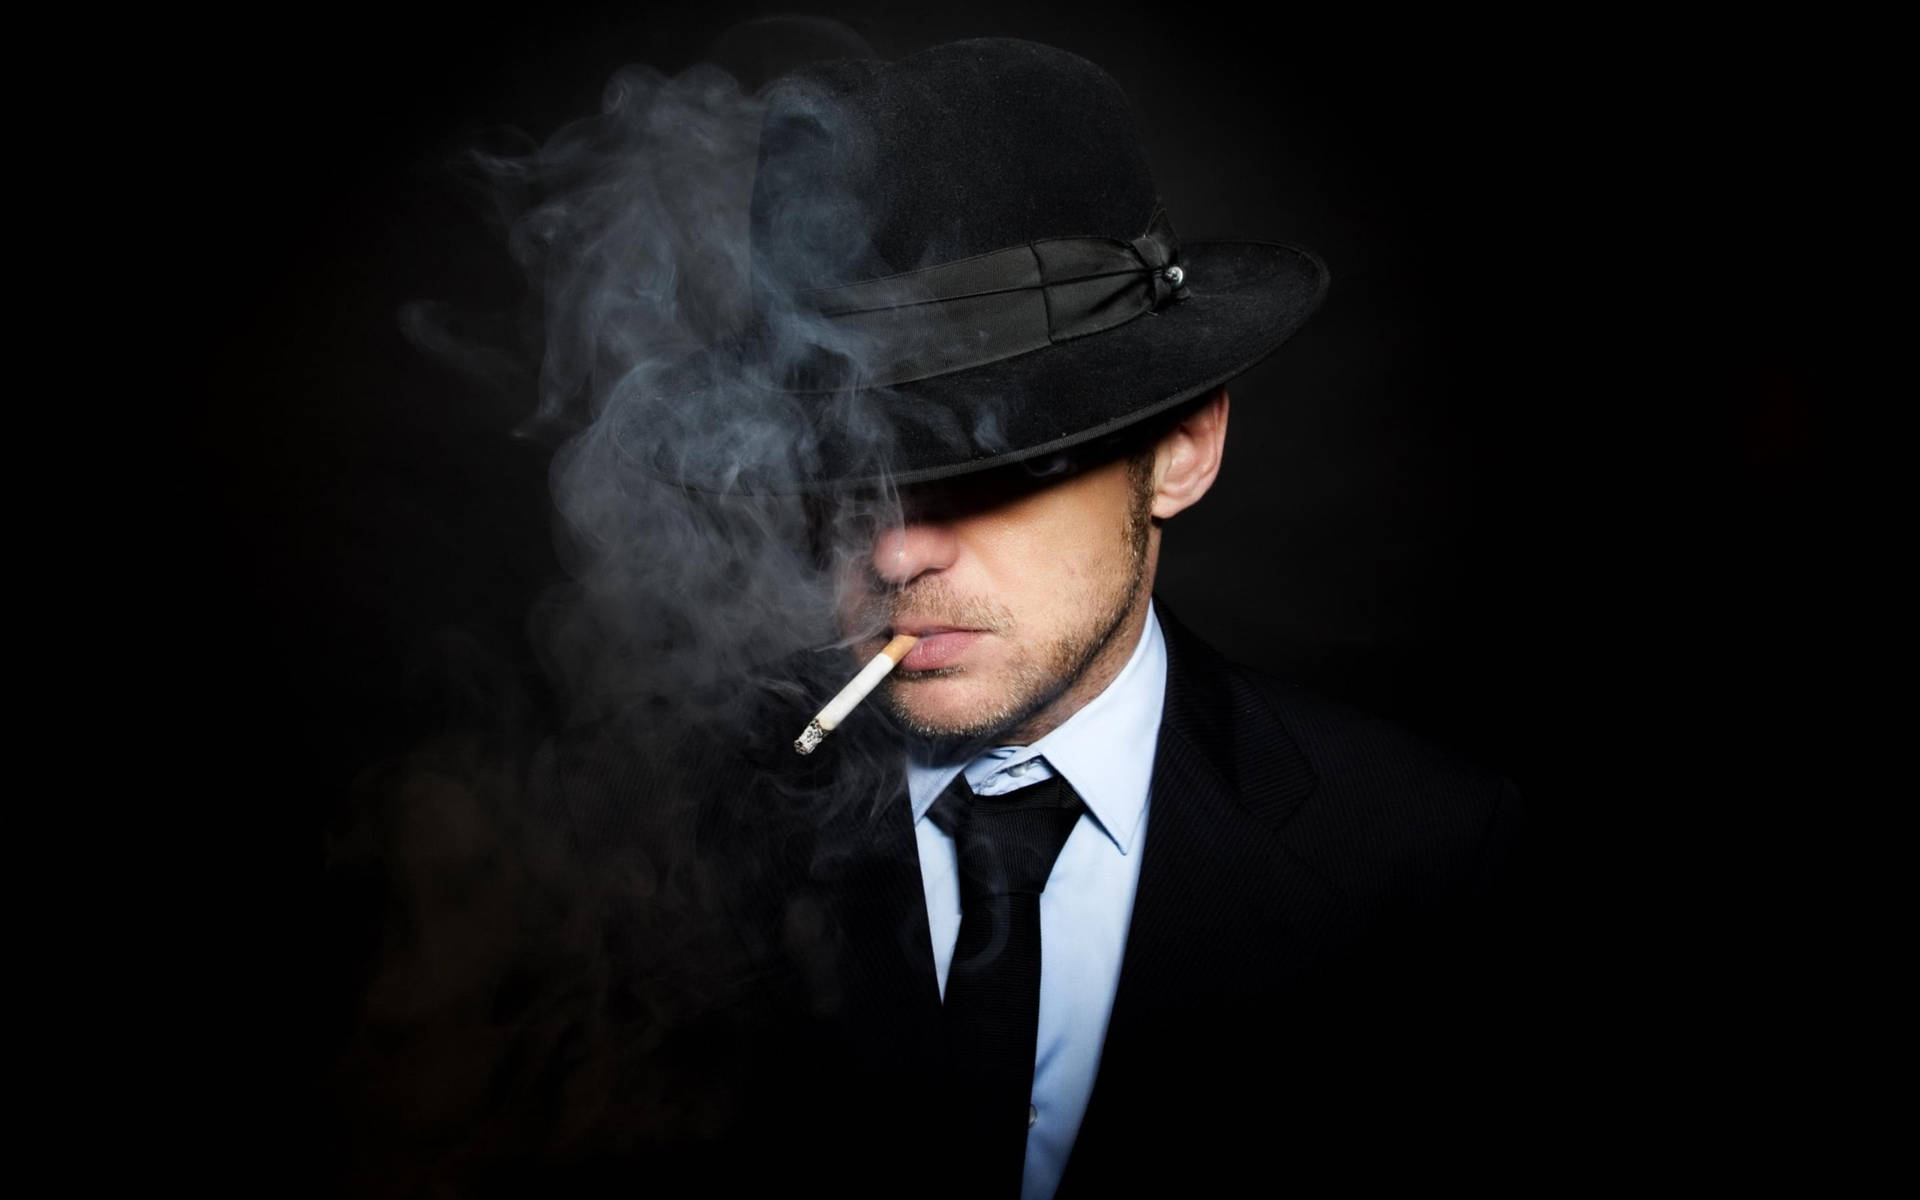 Rökning Mafia I Svart Kostym Wallpaper